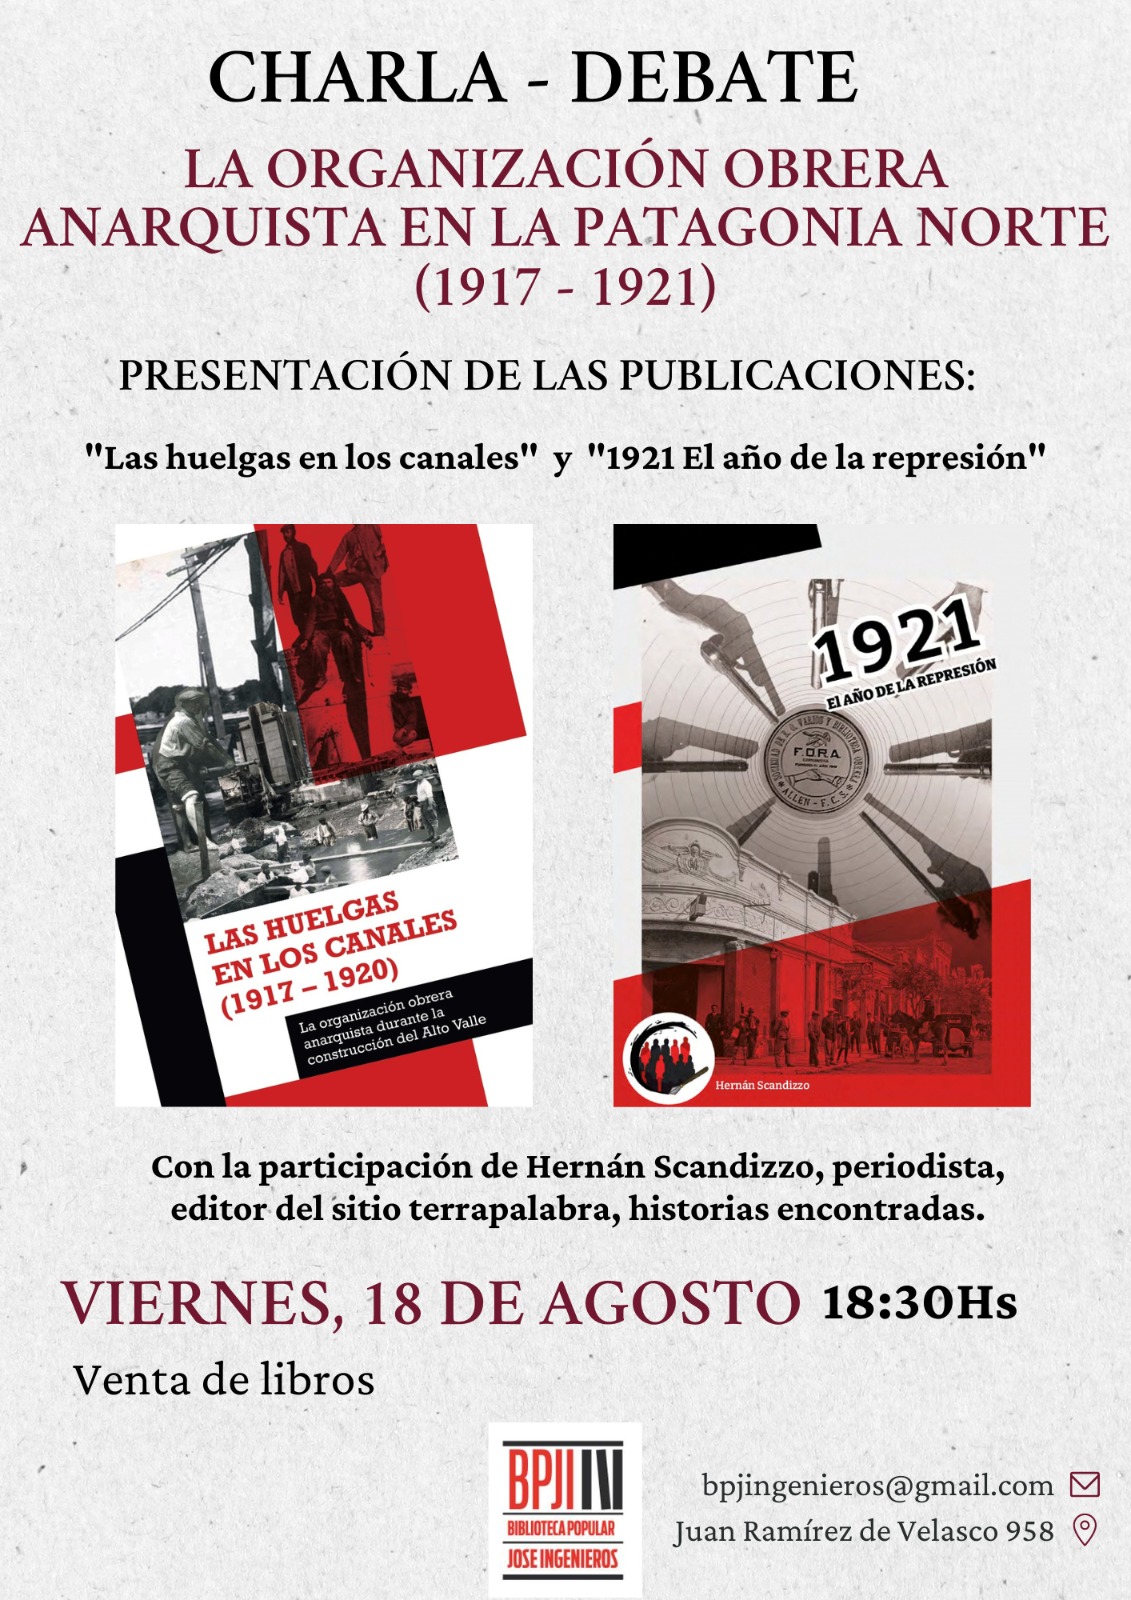 La organización obrera anarquista en la Patagonia Norte (1917-1921)